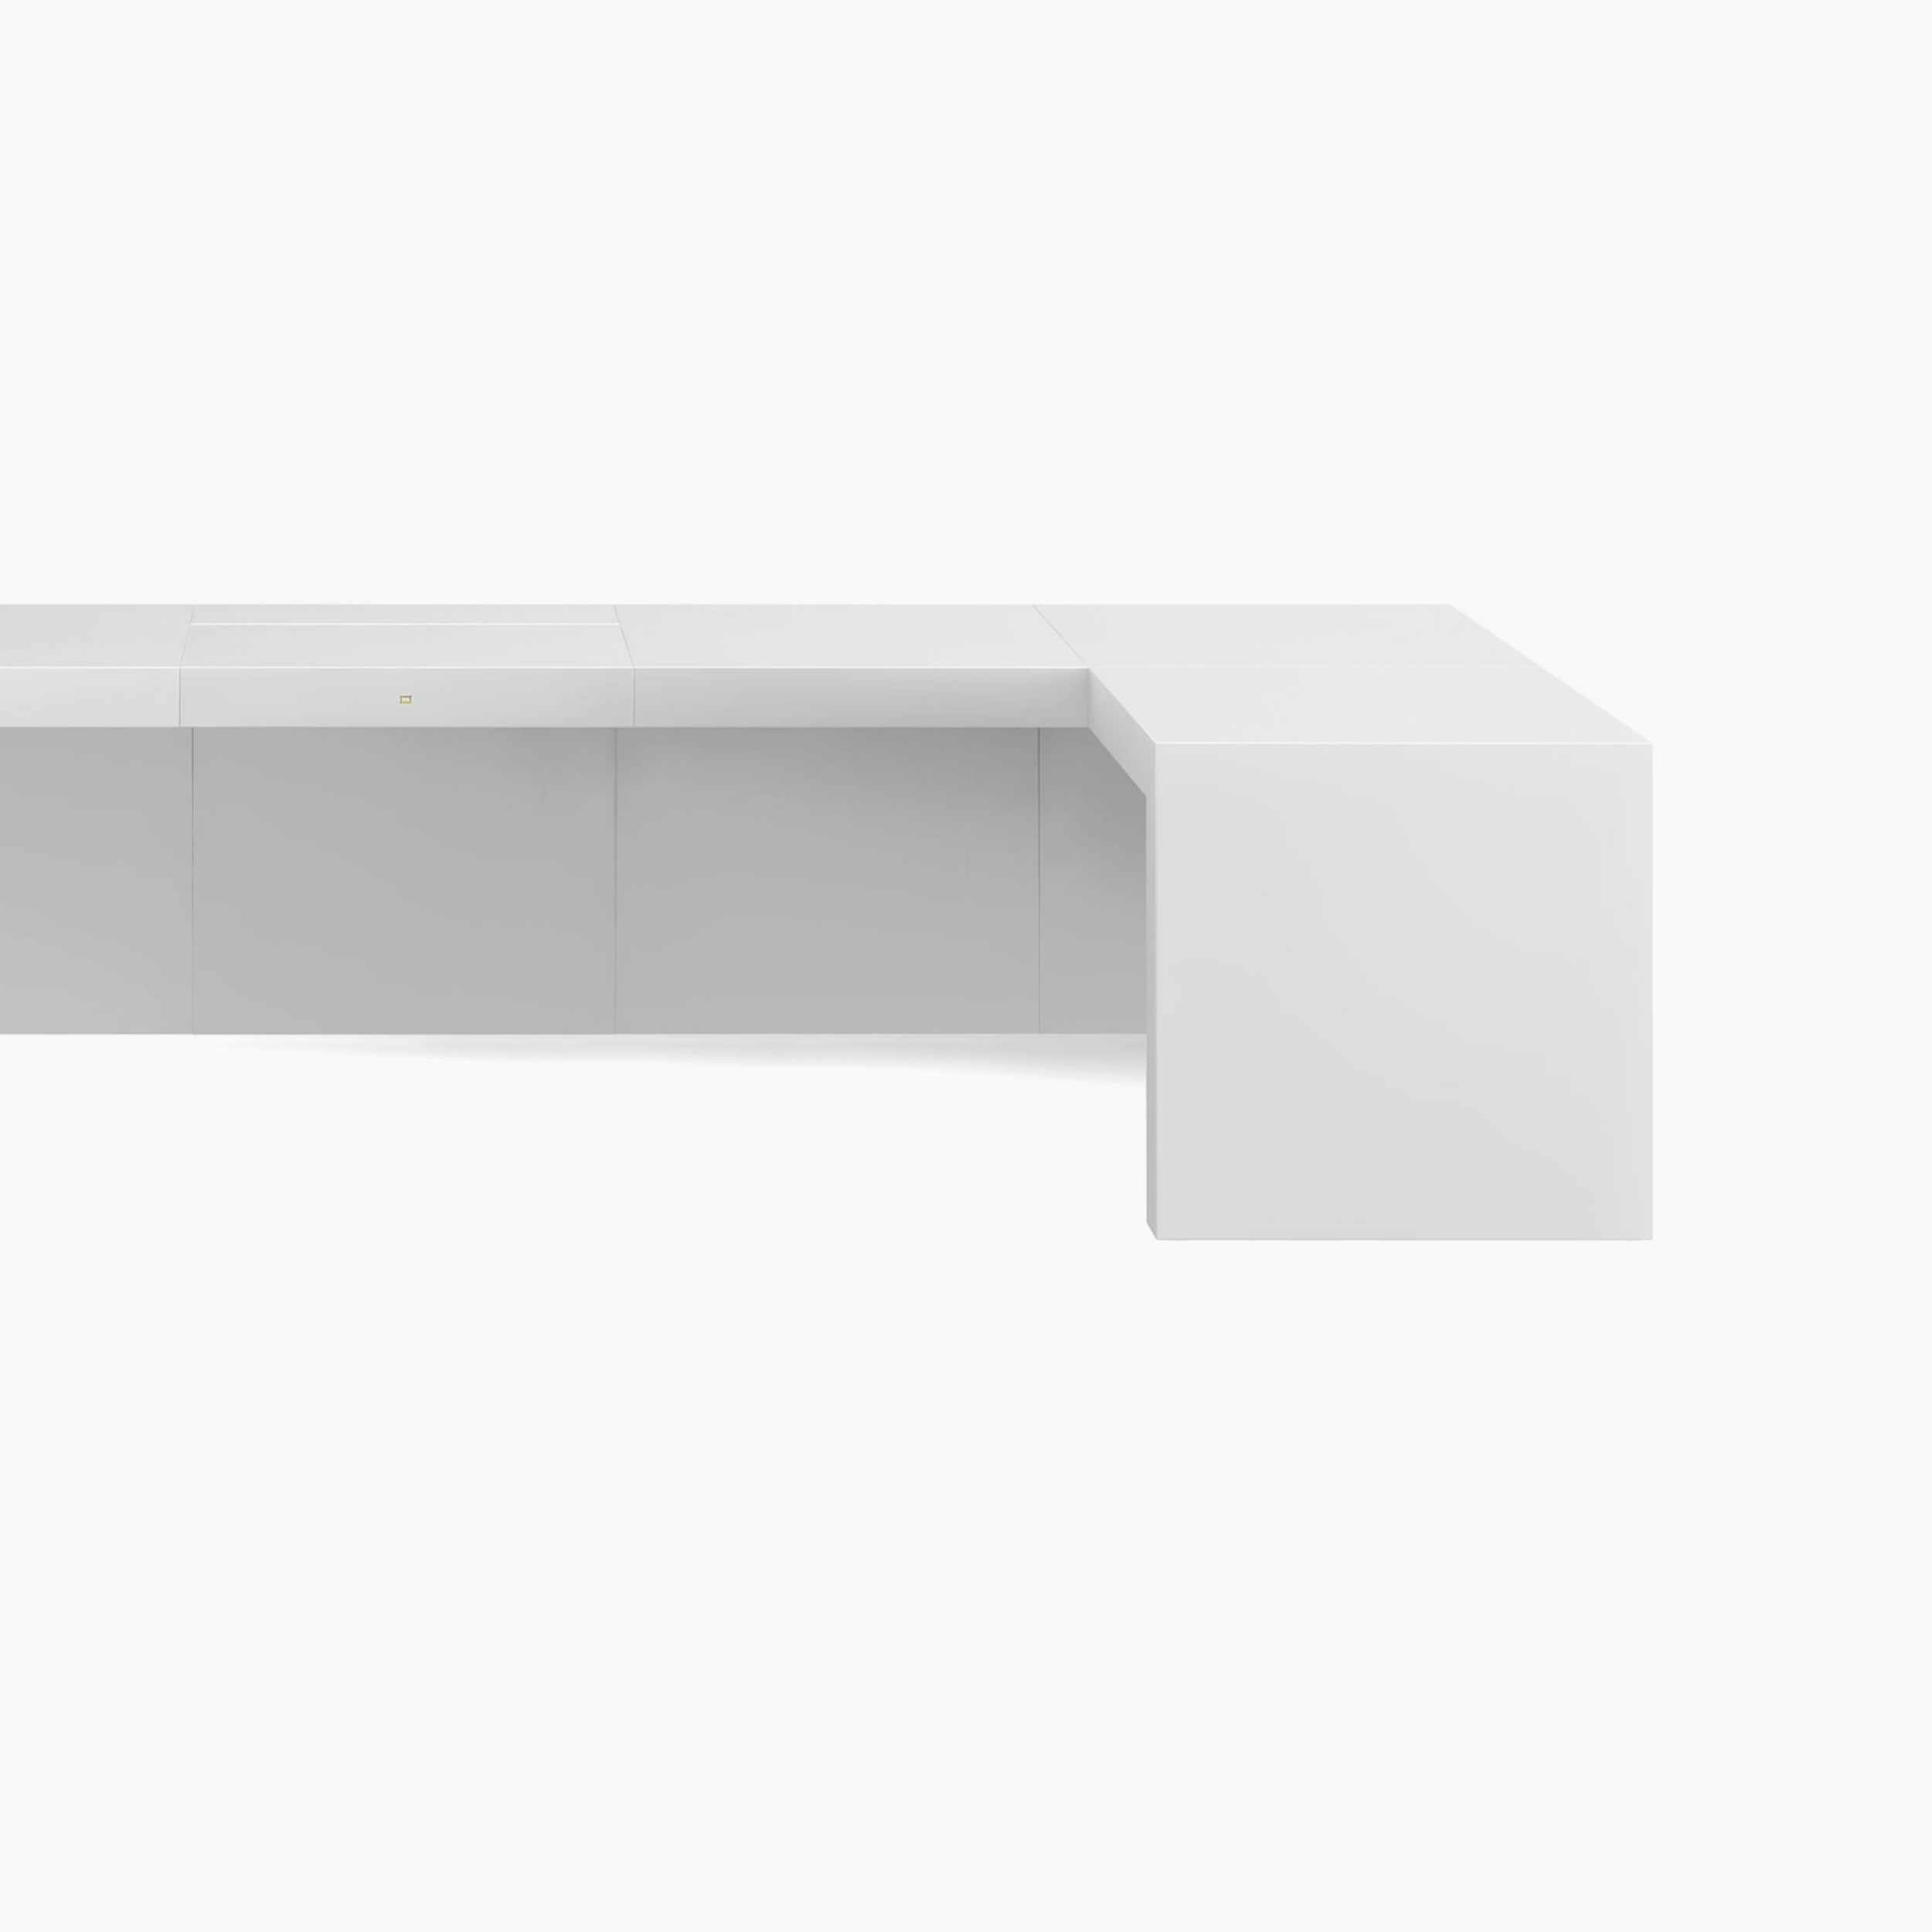 Schreibtisch wuerfel weiss contemporaryart Chefzimmer interior design Schreibtische FS 92 FELIX SCHWAKE